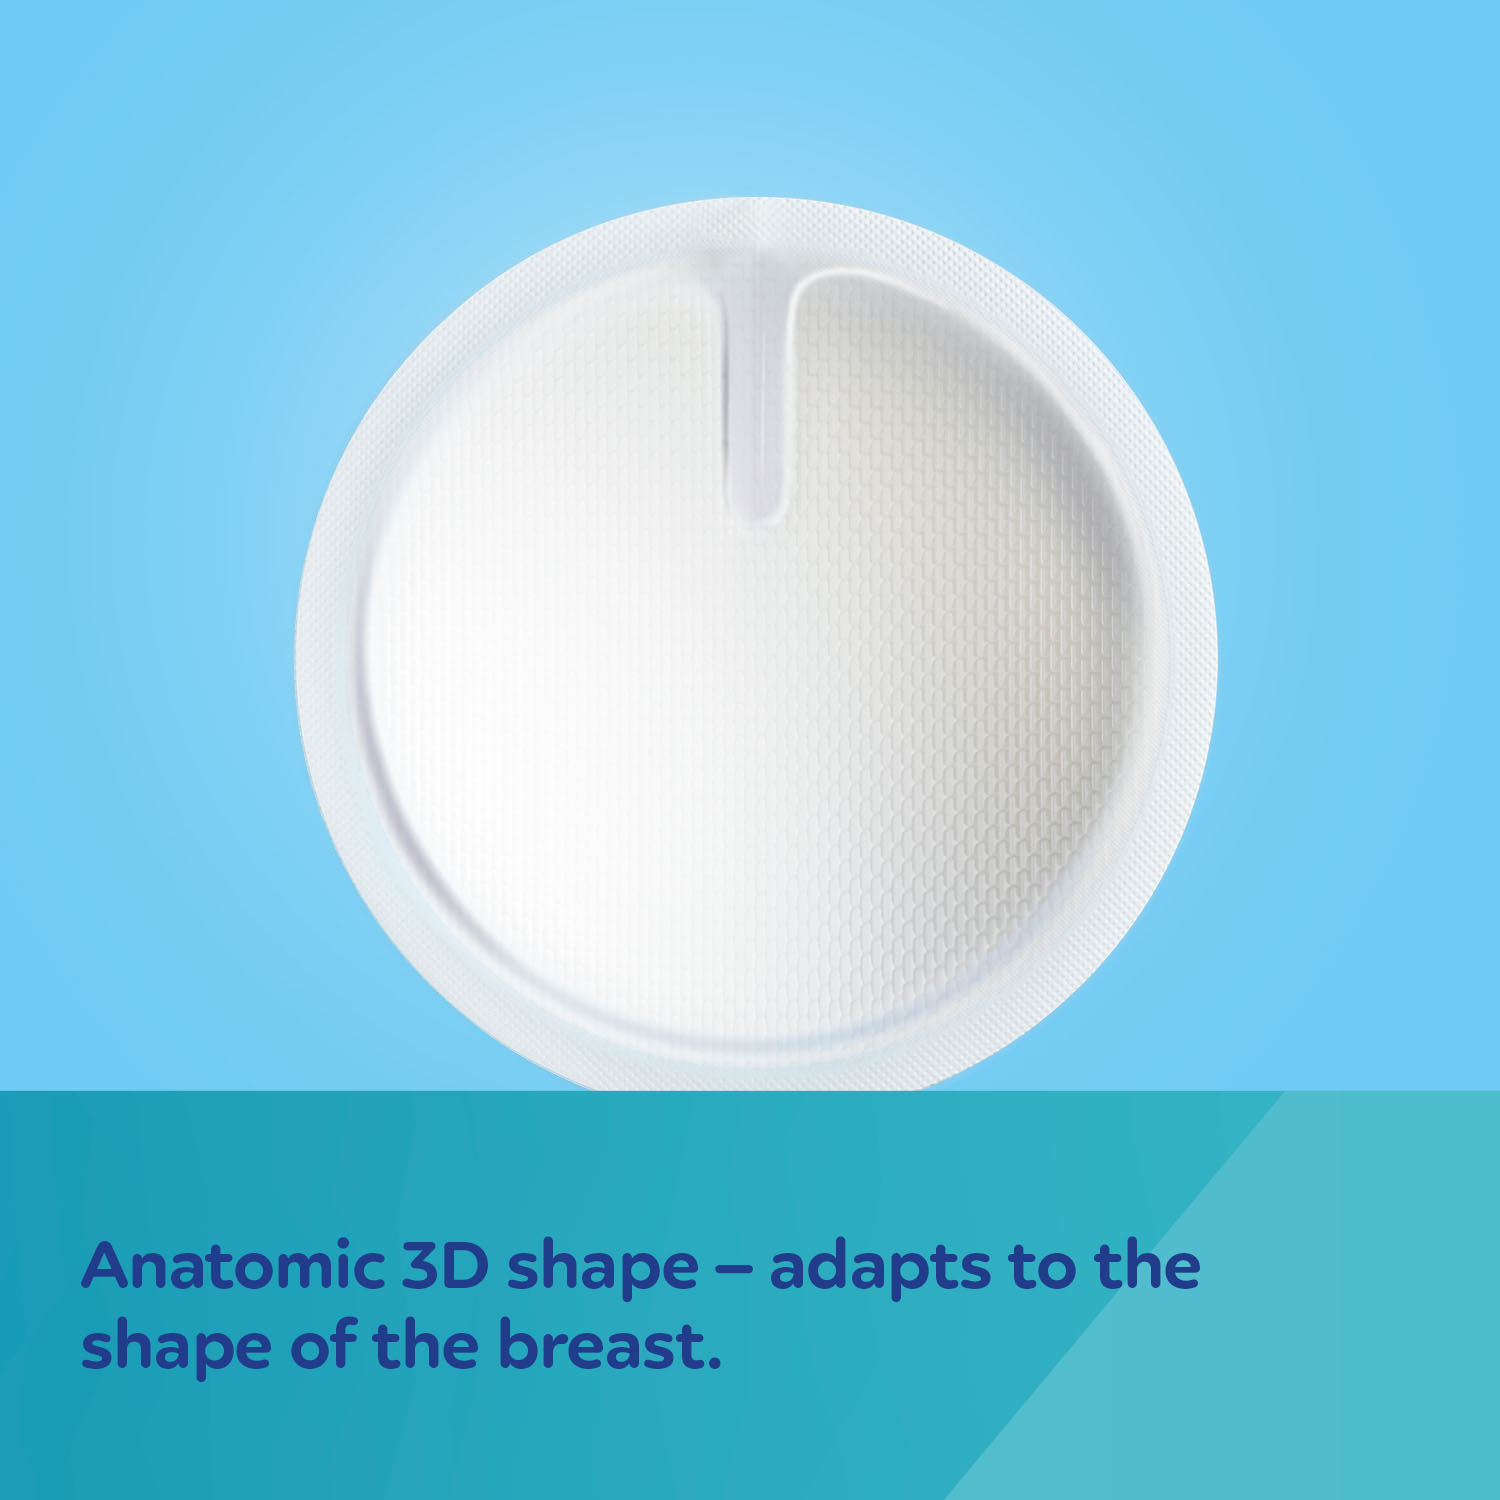 Canpol babies Breast Pads Standard 50+10 Ks discos de lactancia desechables